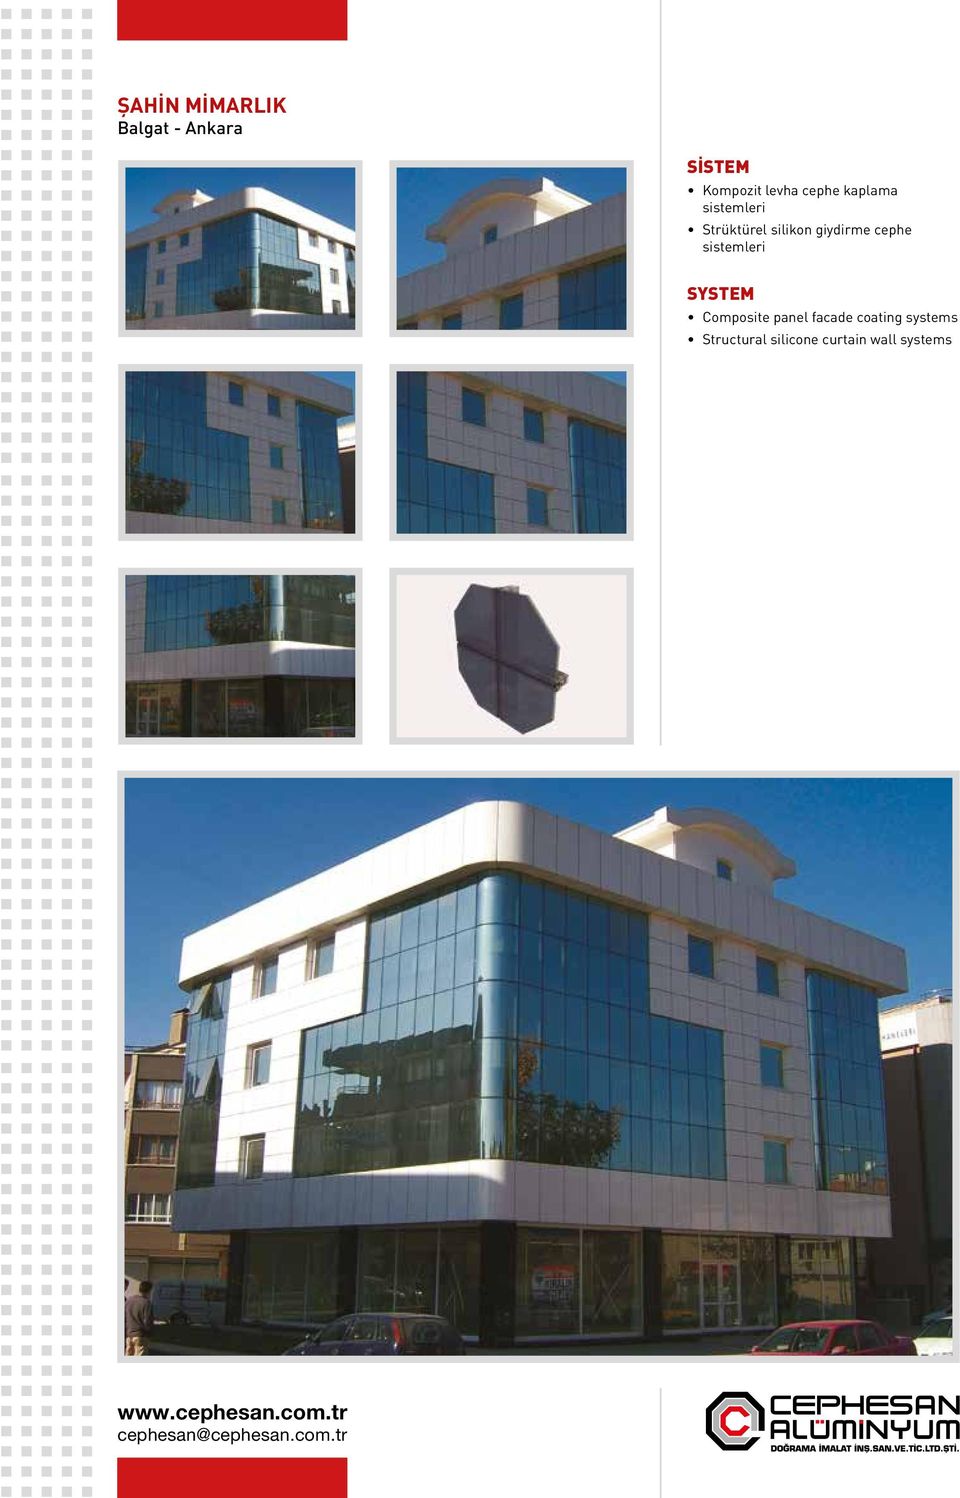 giydirme cephe Composite panel facade